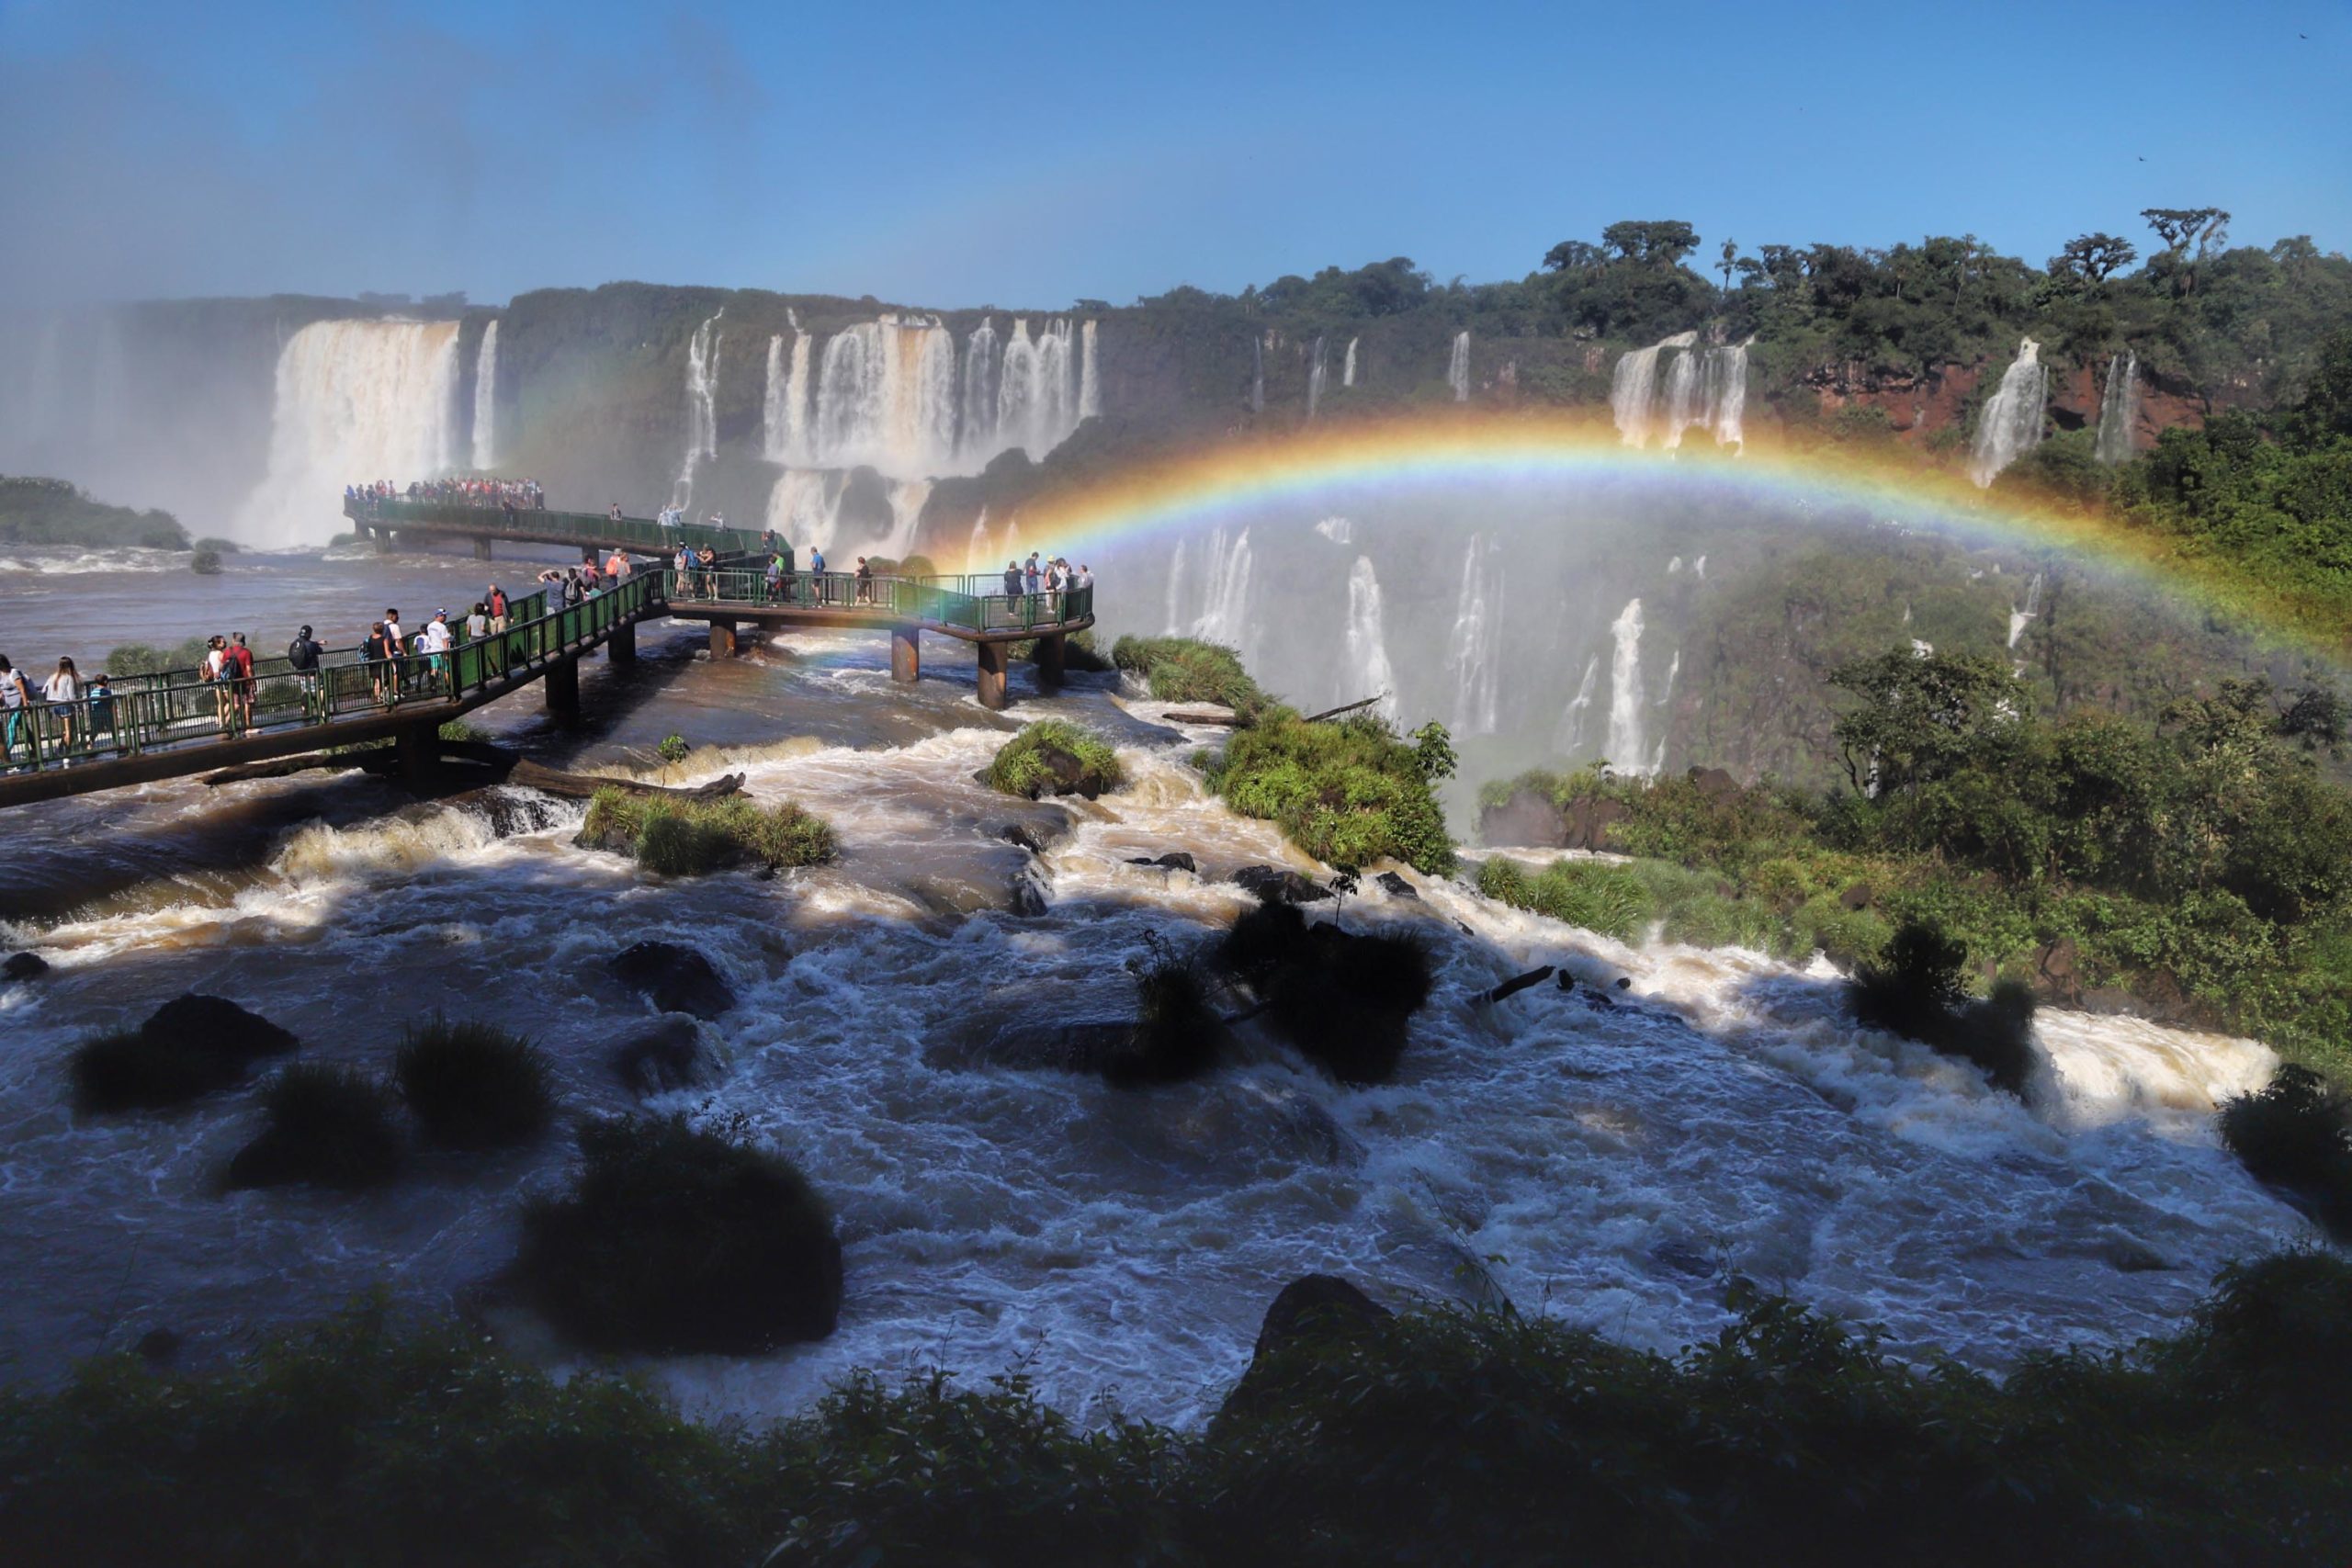  Cataratas do Iguaçu no Paraná é uma das principais atrações turísticas do planeta